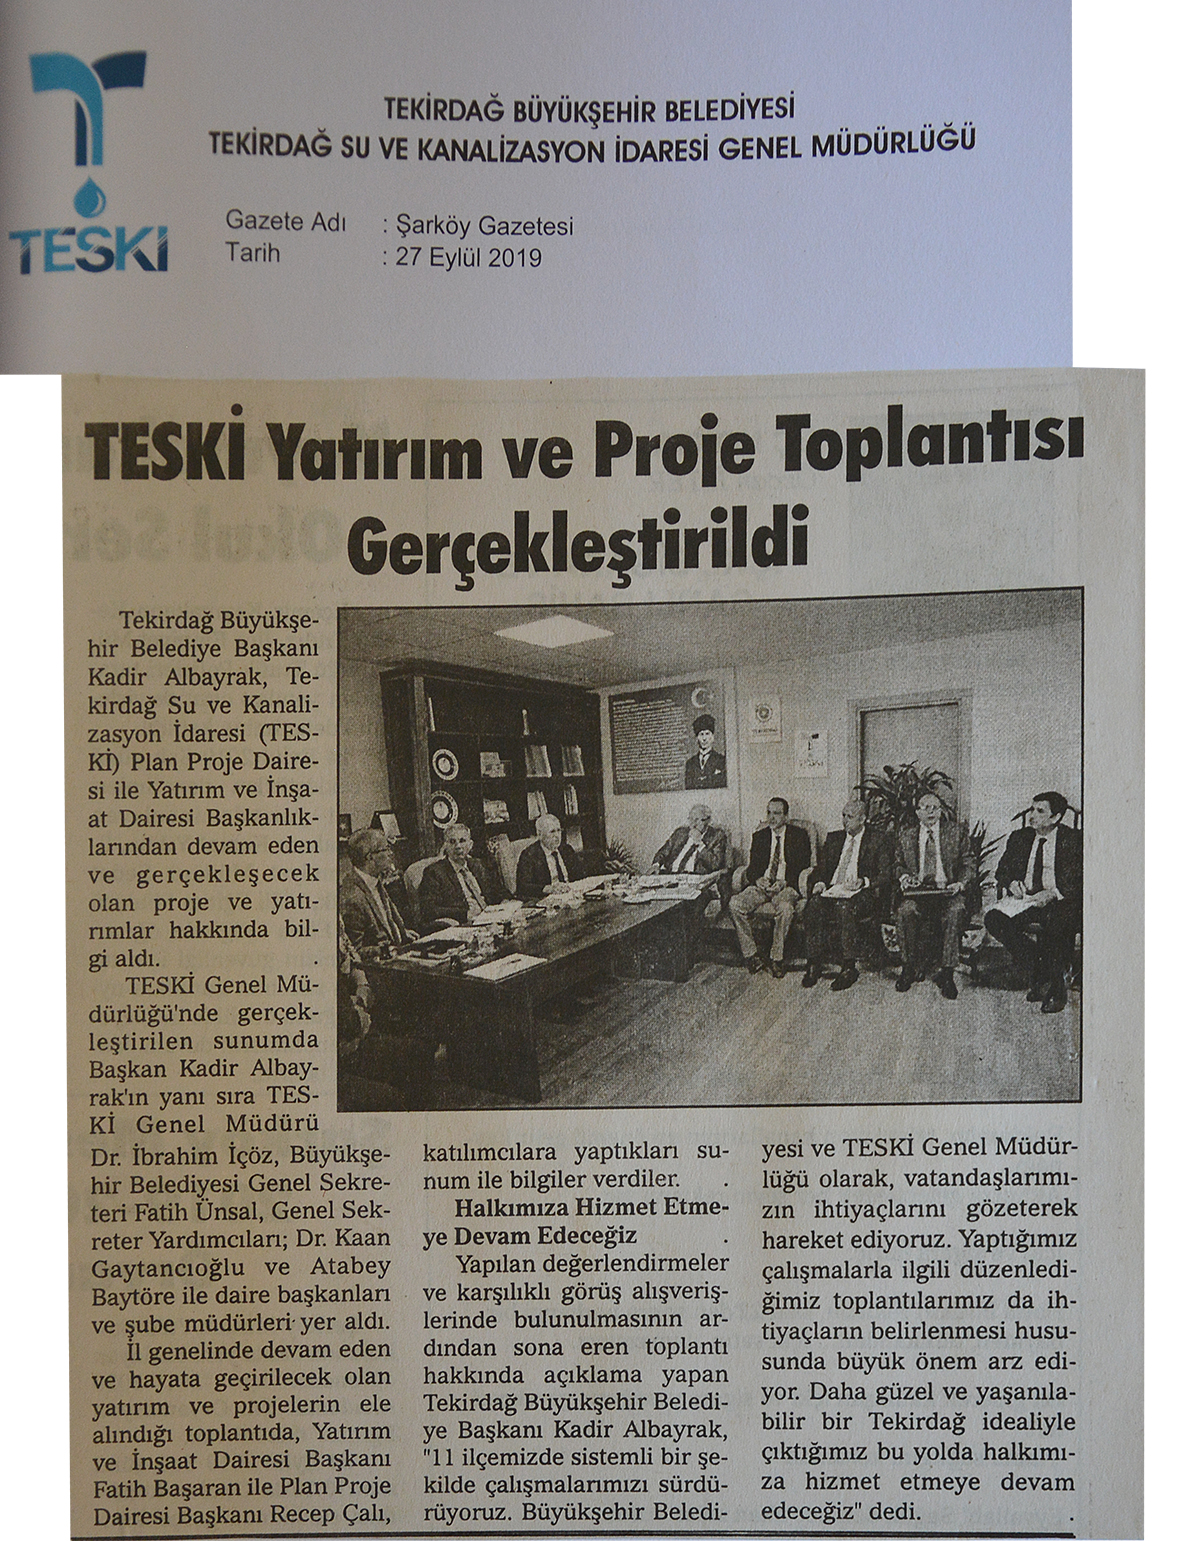 TESKİ Yatırım ve Proje Toplantısı Gerçekleştirildi (Şarköy Gazetesi)